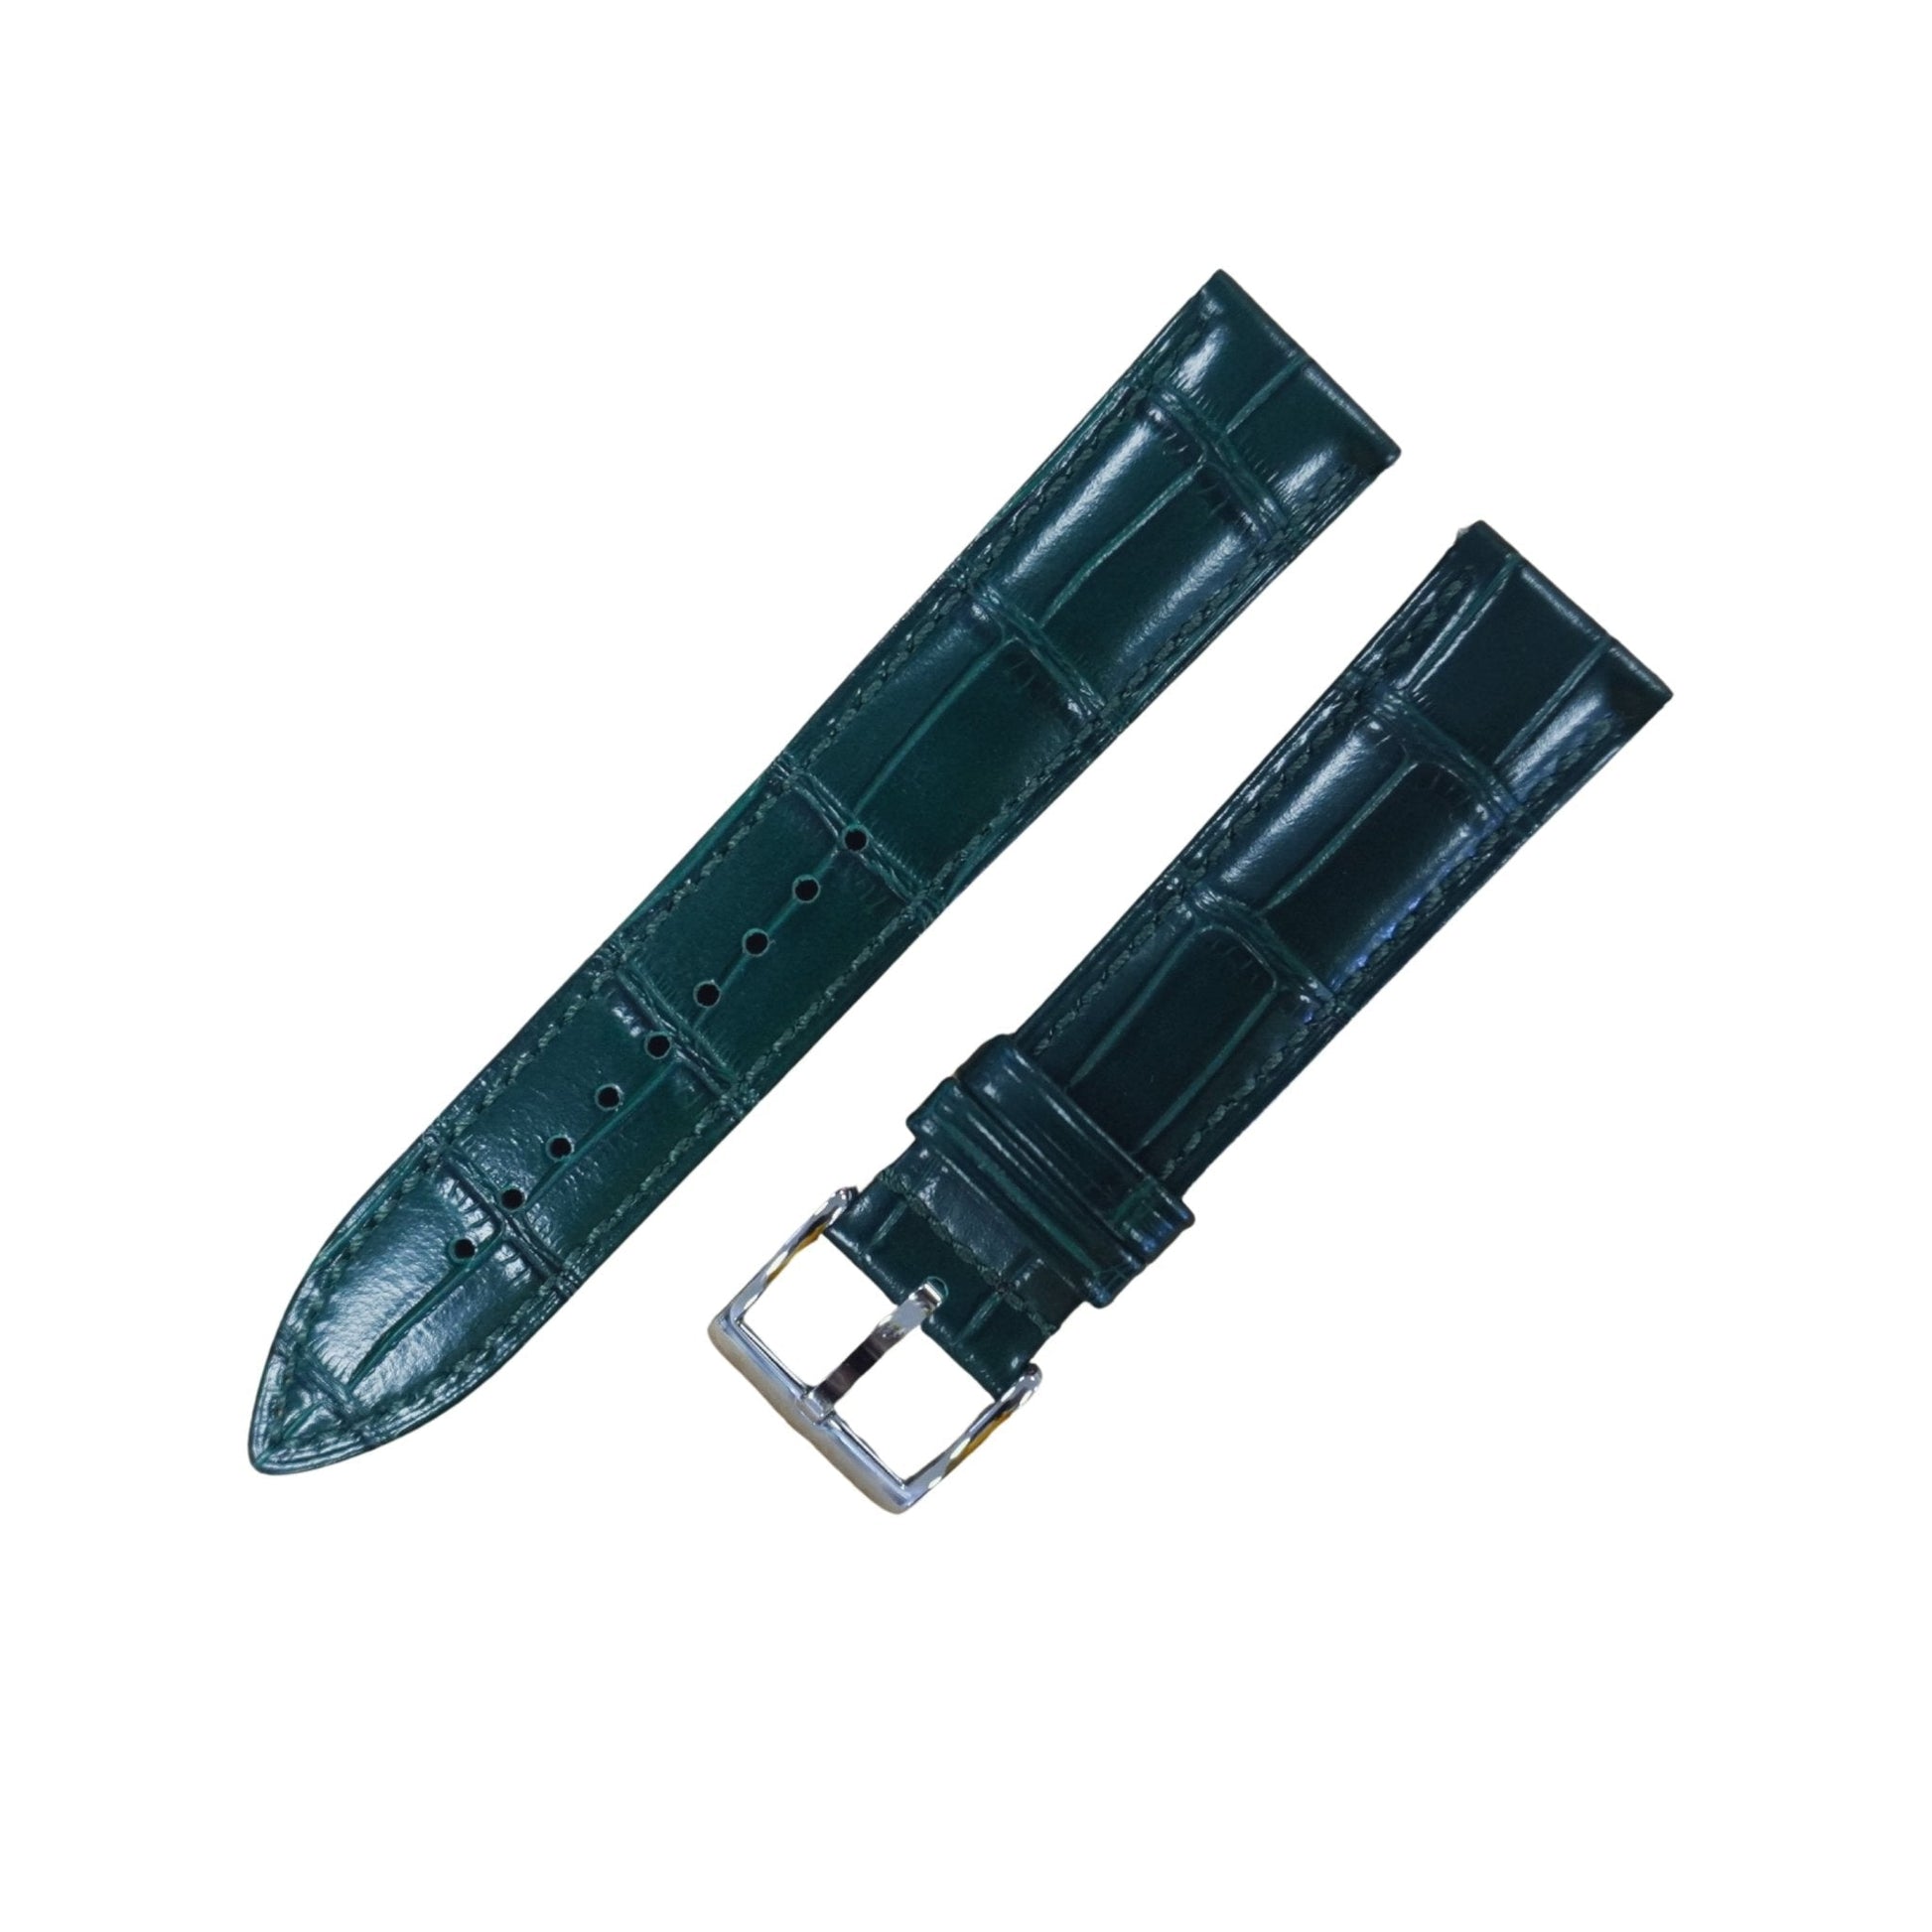 Bracelet montre cuir croco - MONTRE A PAPY - Montre automatique seiko mod 18mmGreen